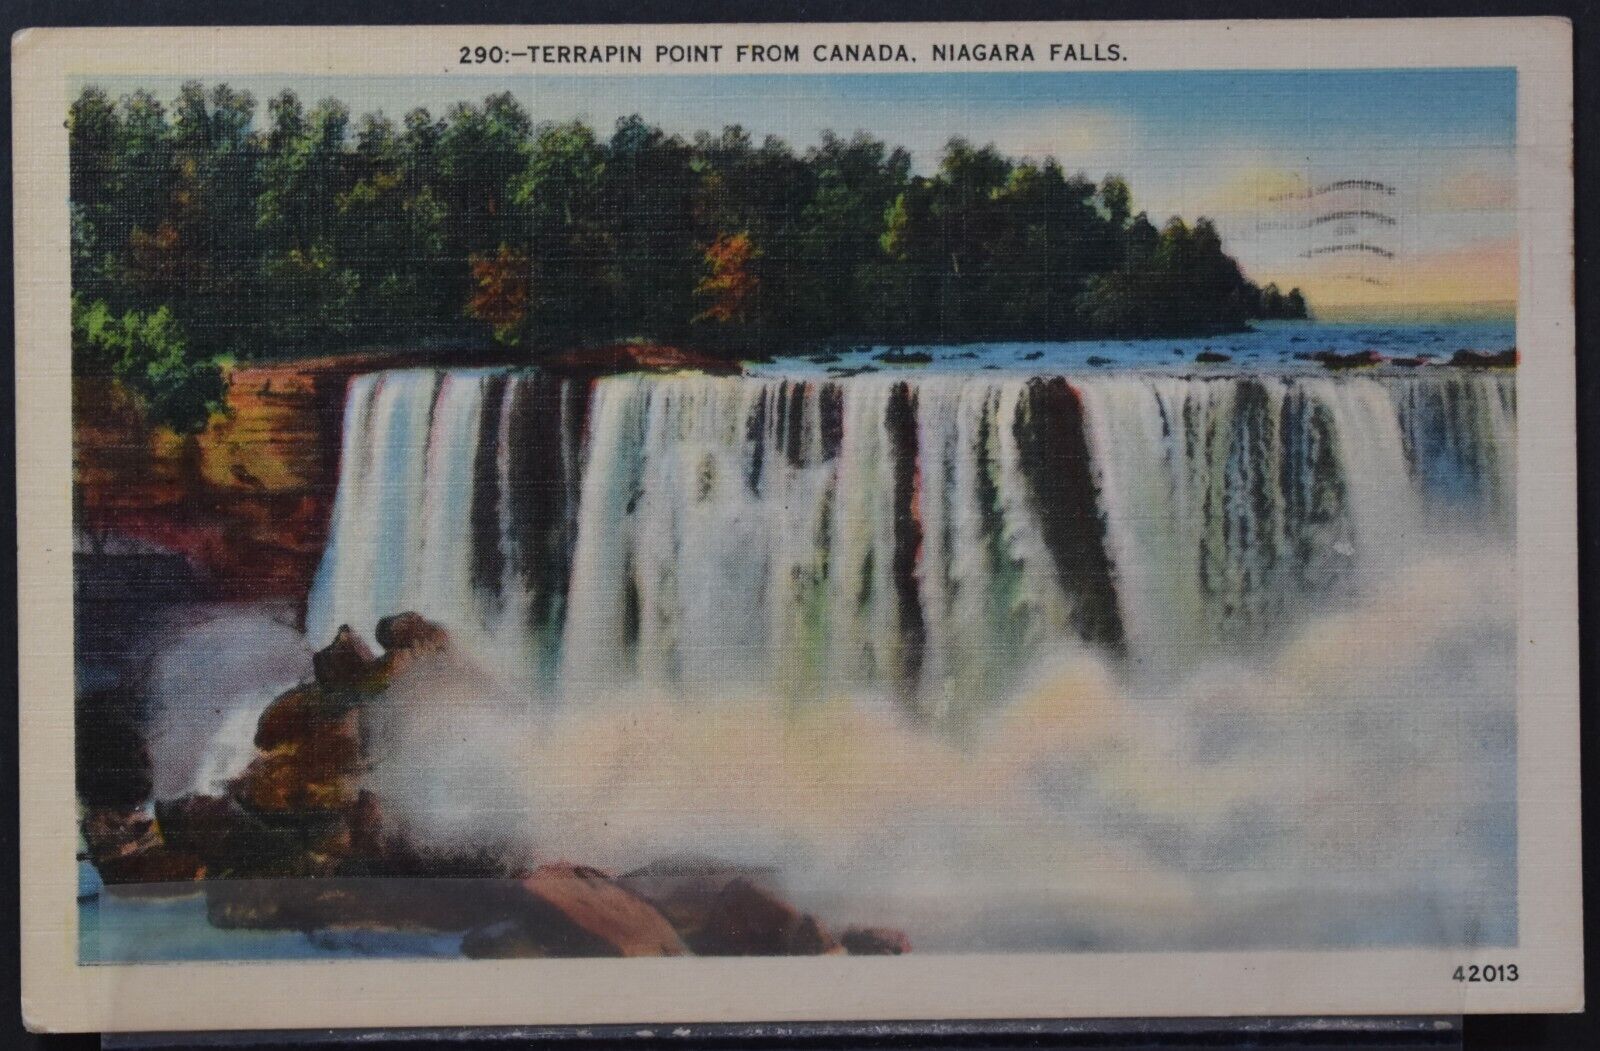 Niagara Falls, Ontario, Canada - Terrapin Point From Canada - 1946